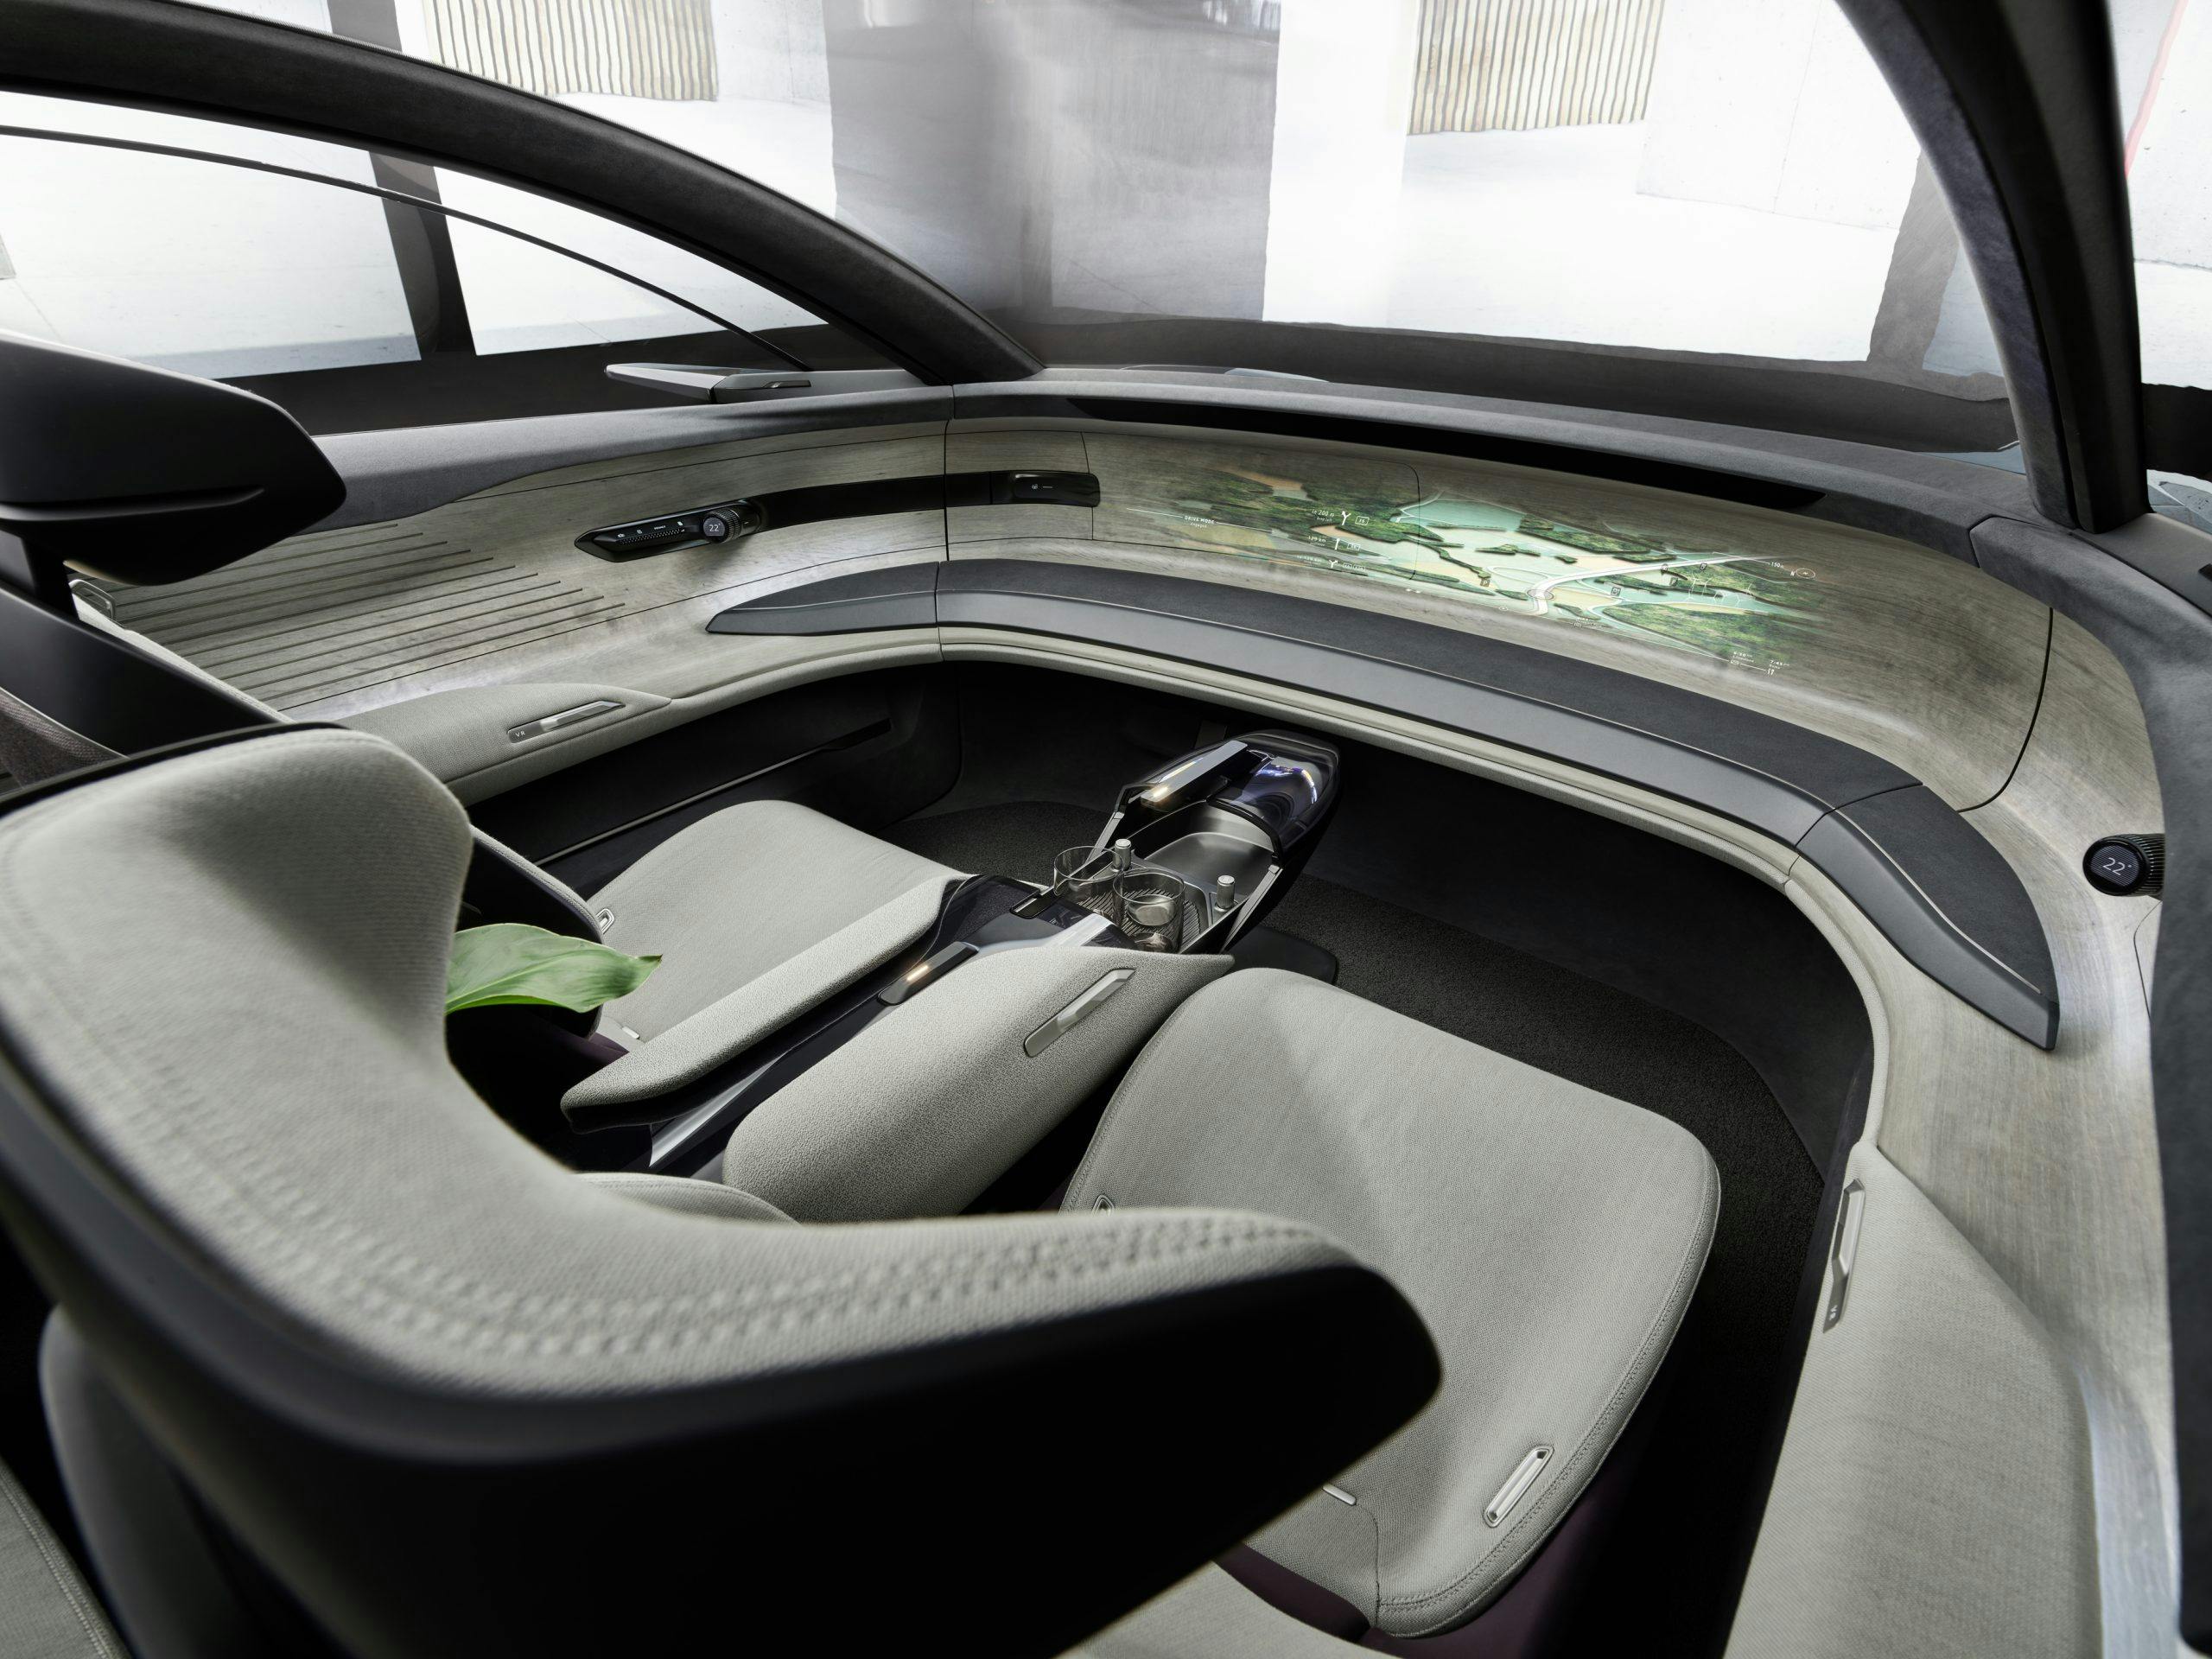 Audi Grand Sphere interior 1